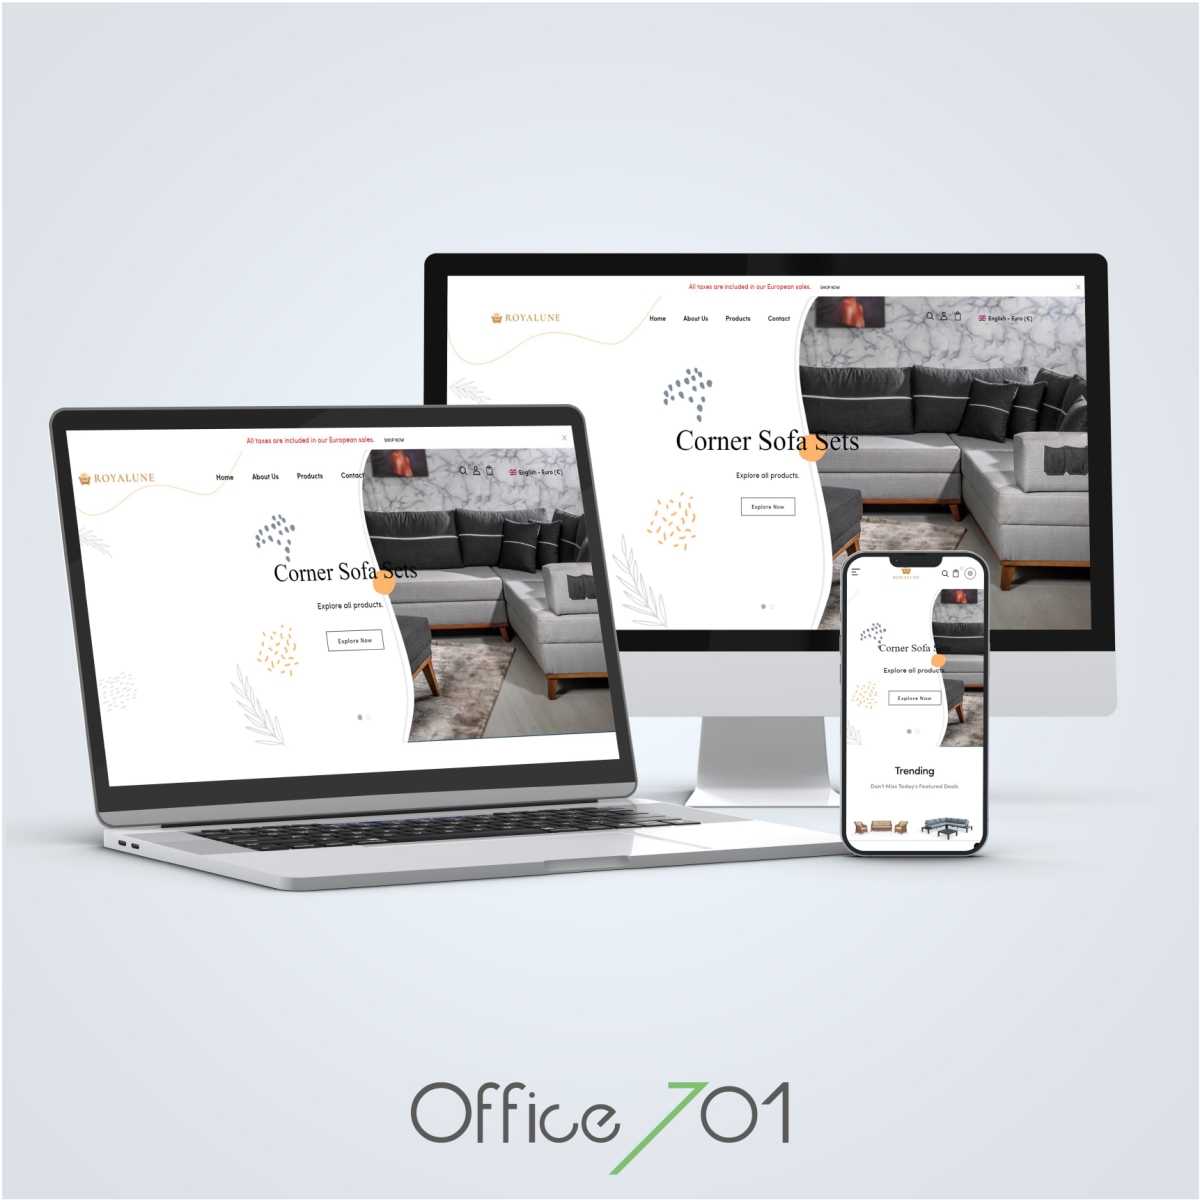 Office701 | Royalune | Shopify E-Commerce Website Design